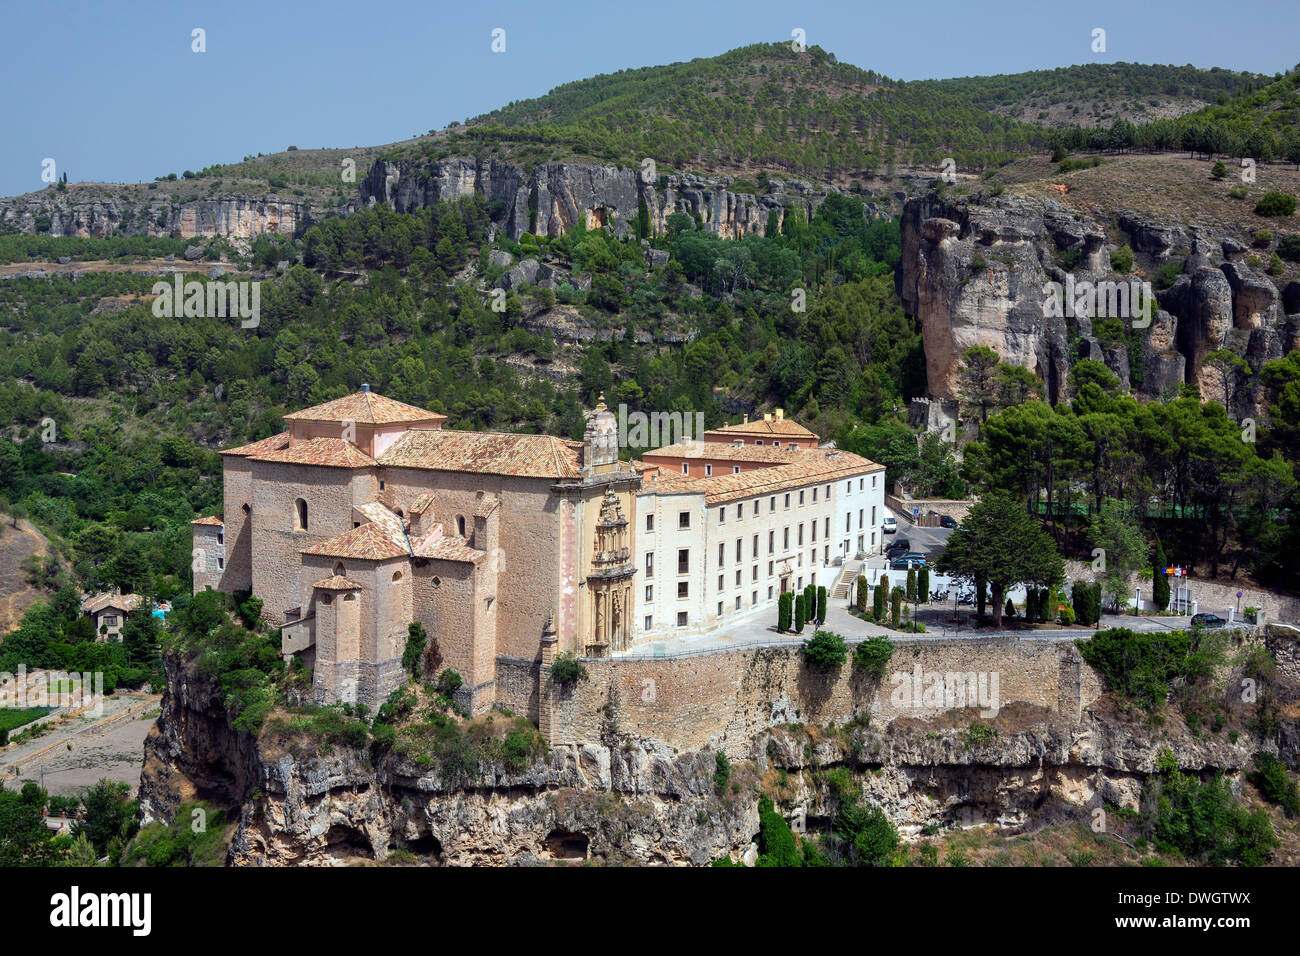 Cuenca Monastery (now a hotel - Parador de Cuenca) in the city of Cuenca in the La Macha region of central Spain. Stock Photo